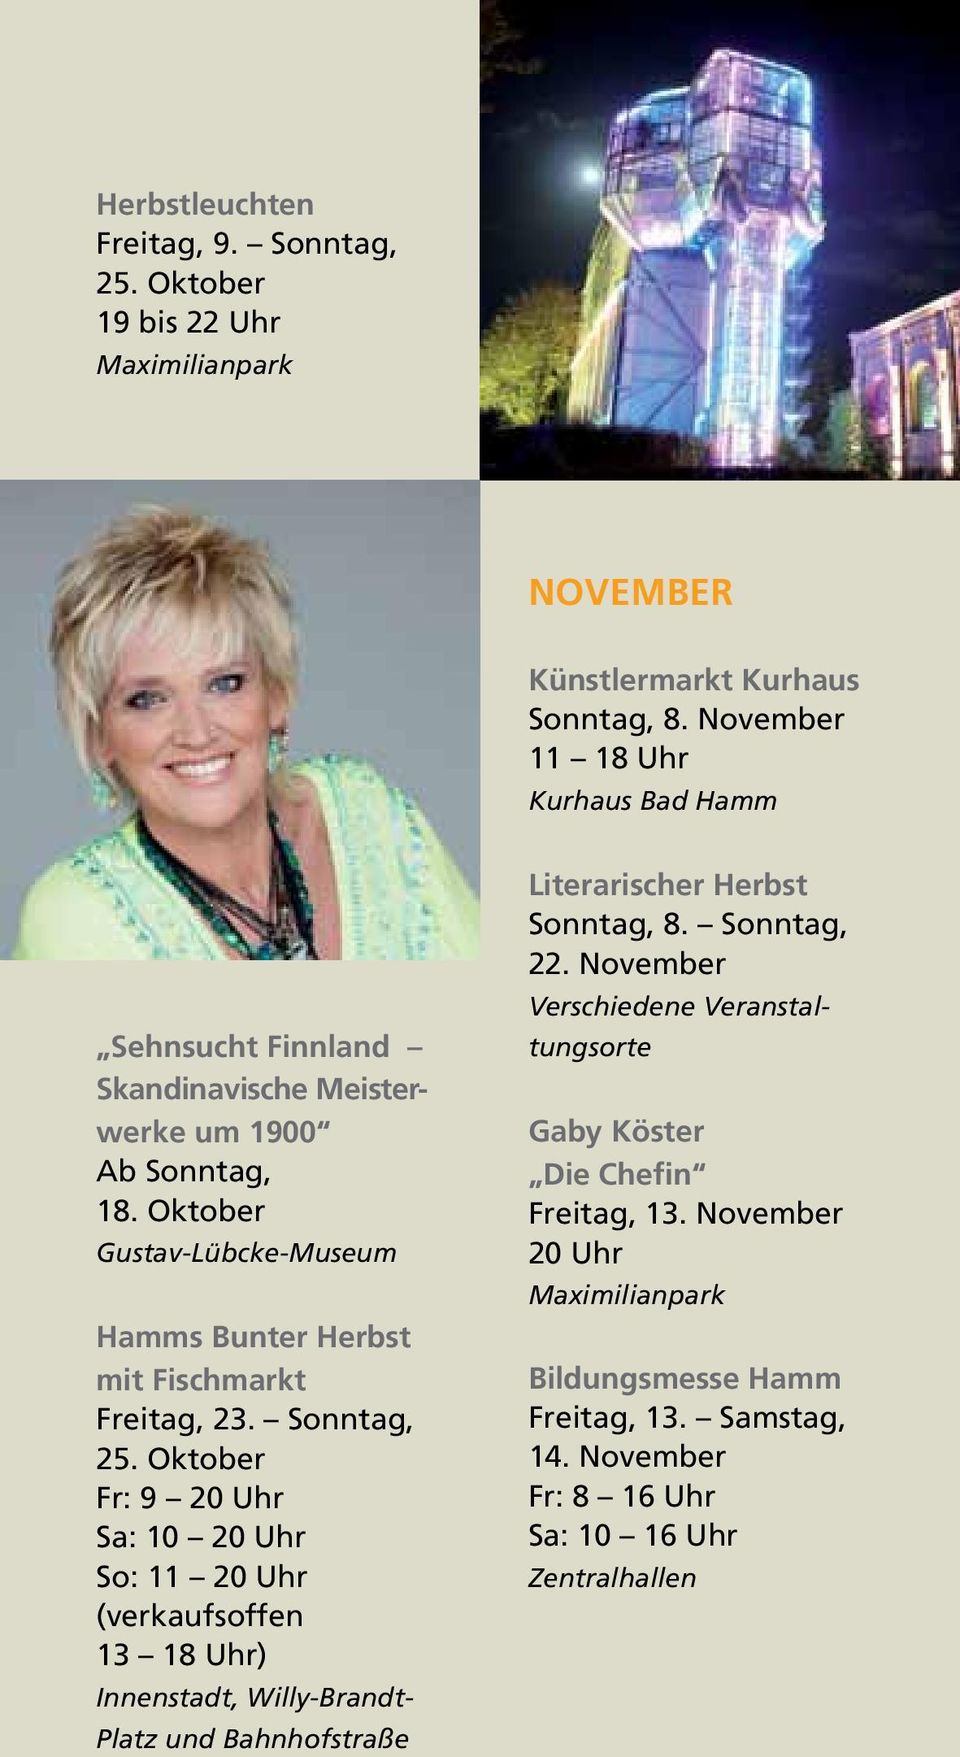 Oktober Gustav-Lübcke-Museum Hamms Bunter Herbst mit Fischmarkt Freitag, 23. Sonntag, 25.